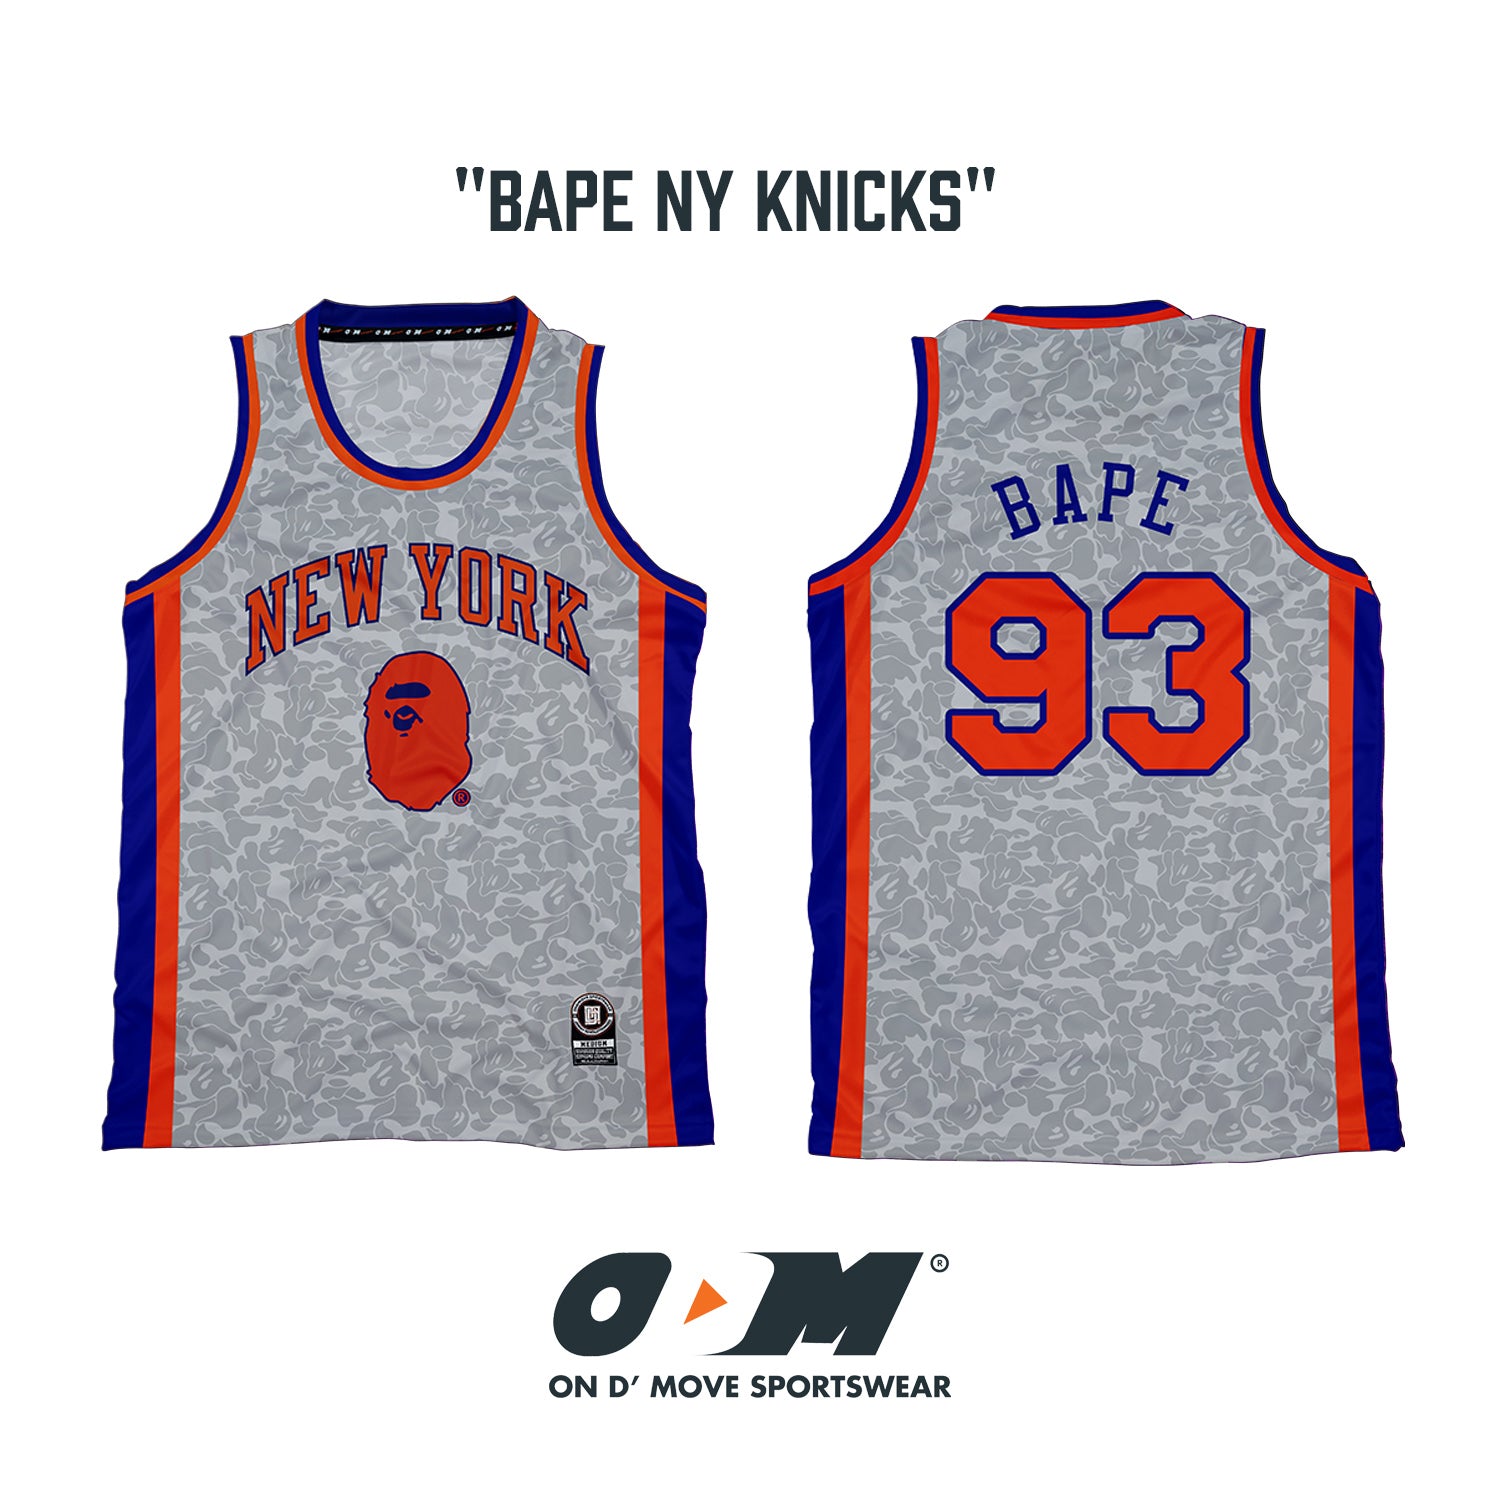 BAPE Knicks Jersey